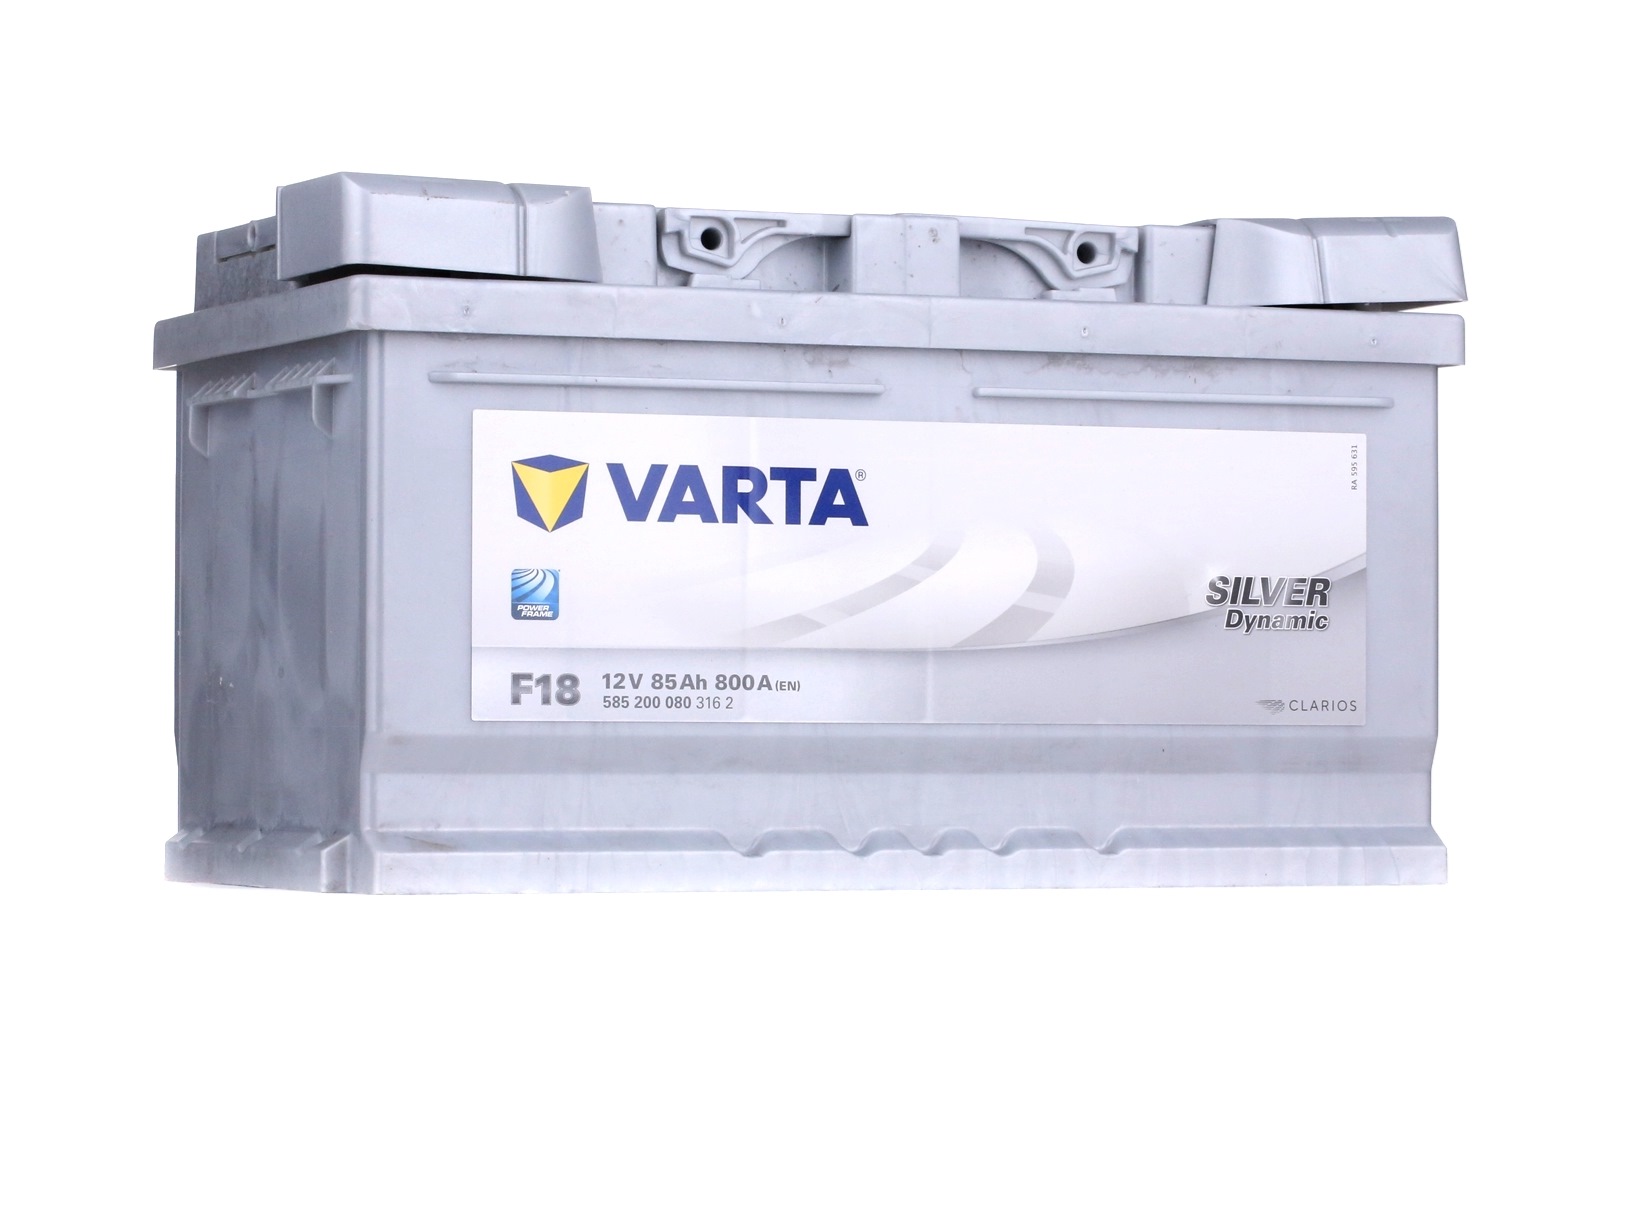 VARTA 5852000803162 Batterie auto 12V 85Ah 800A B13 Batterie au plomb Mercedes de qualité d'origine